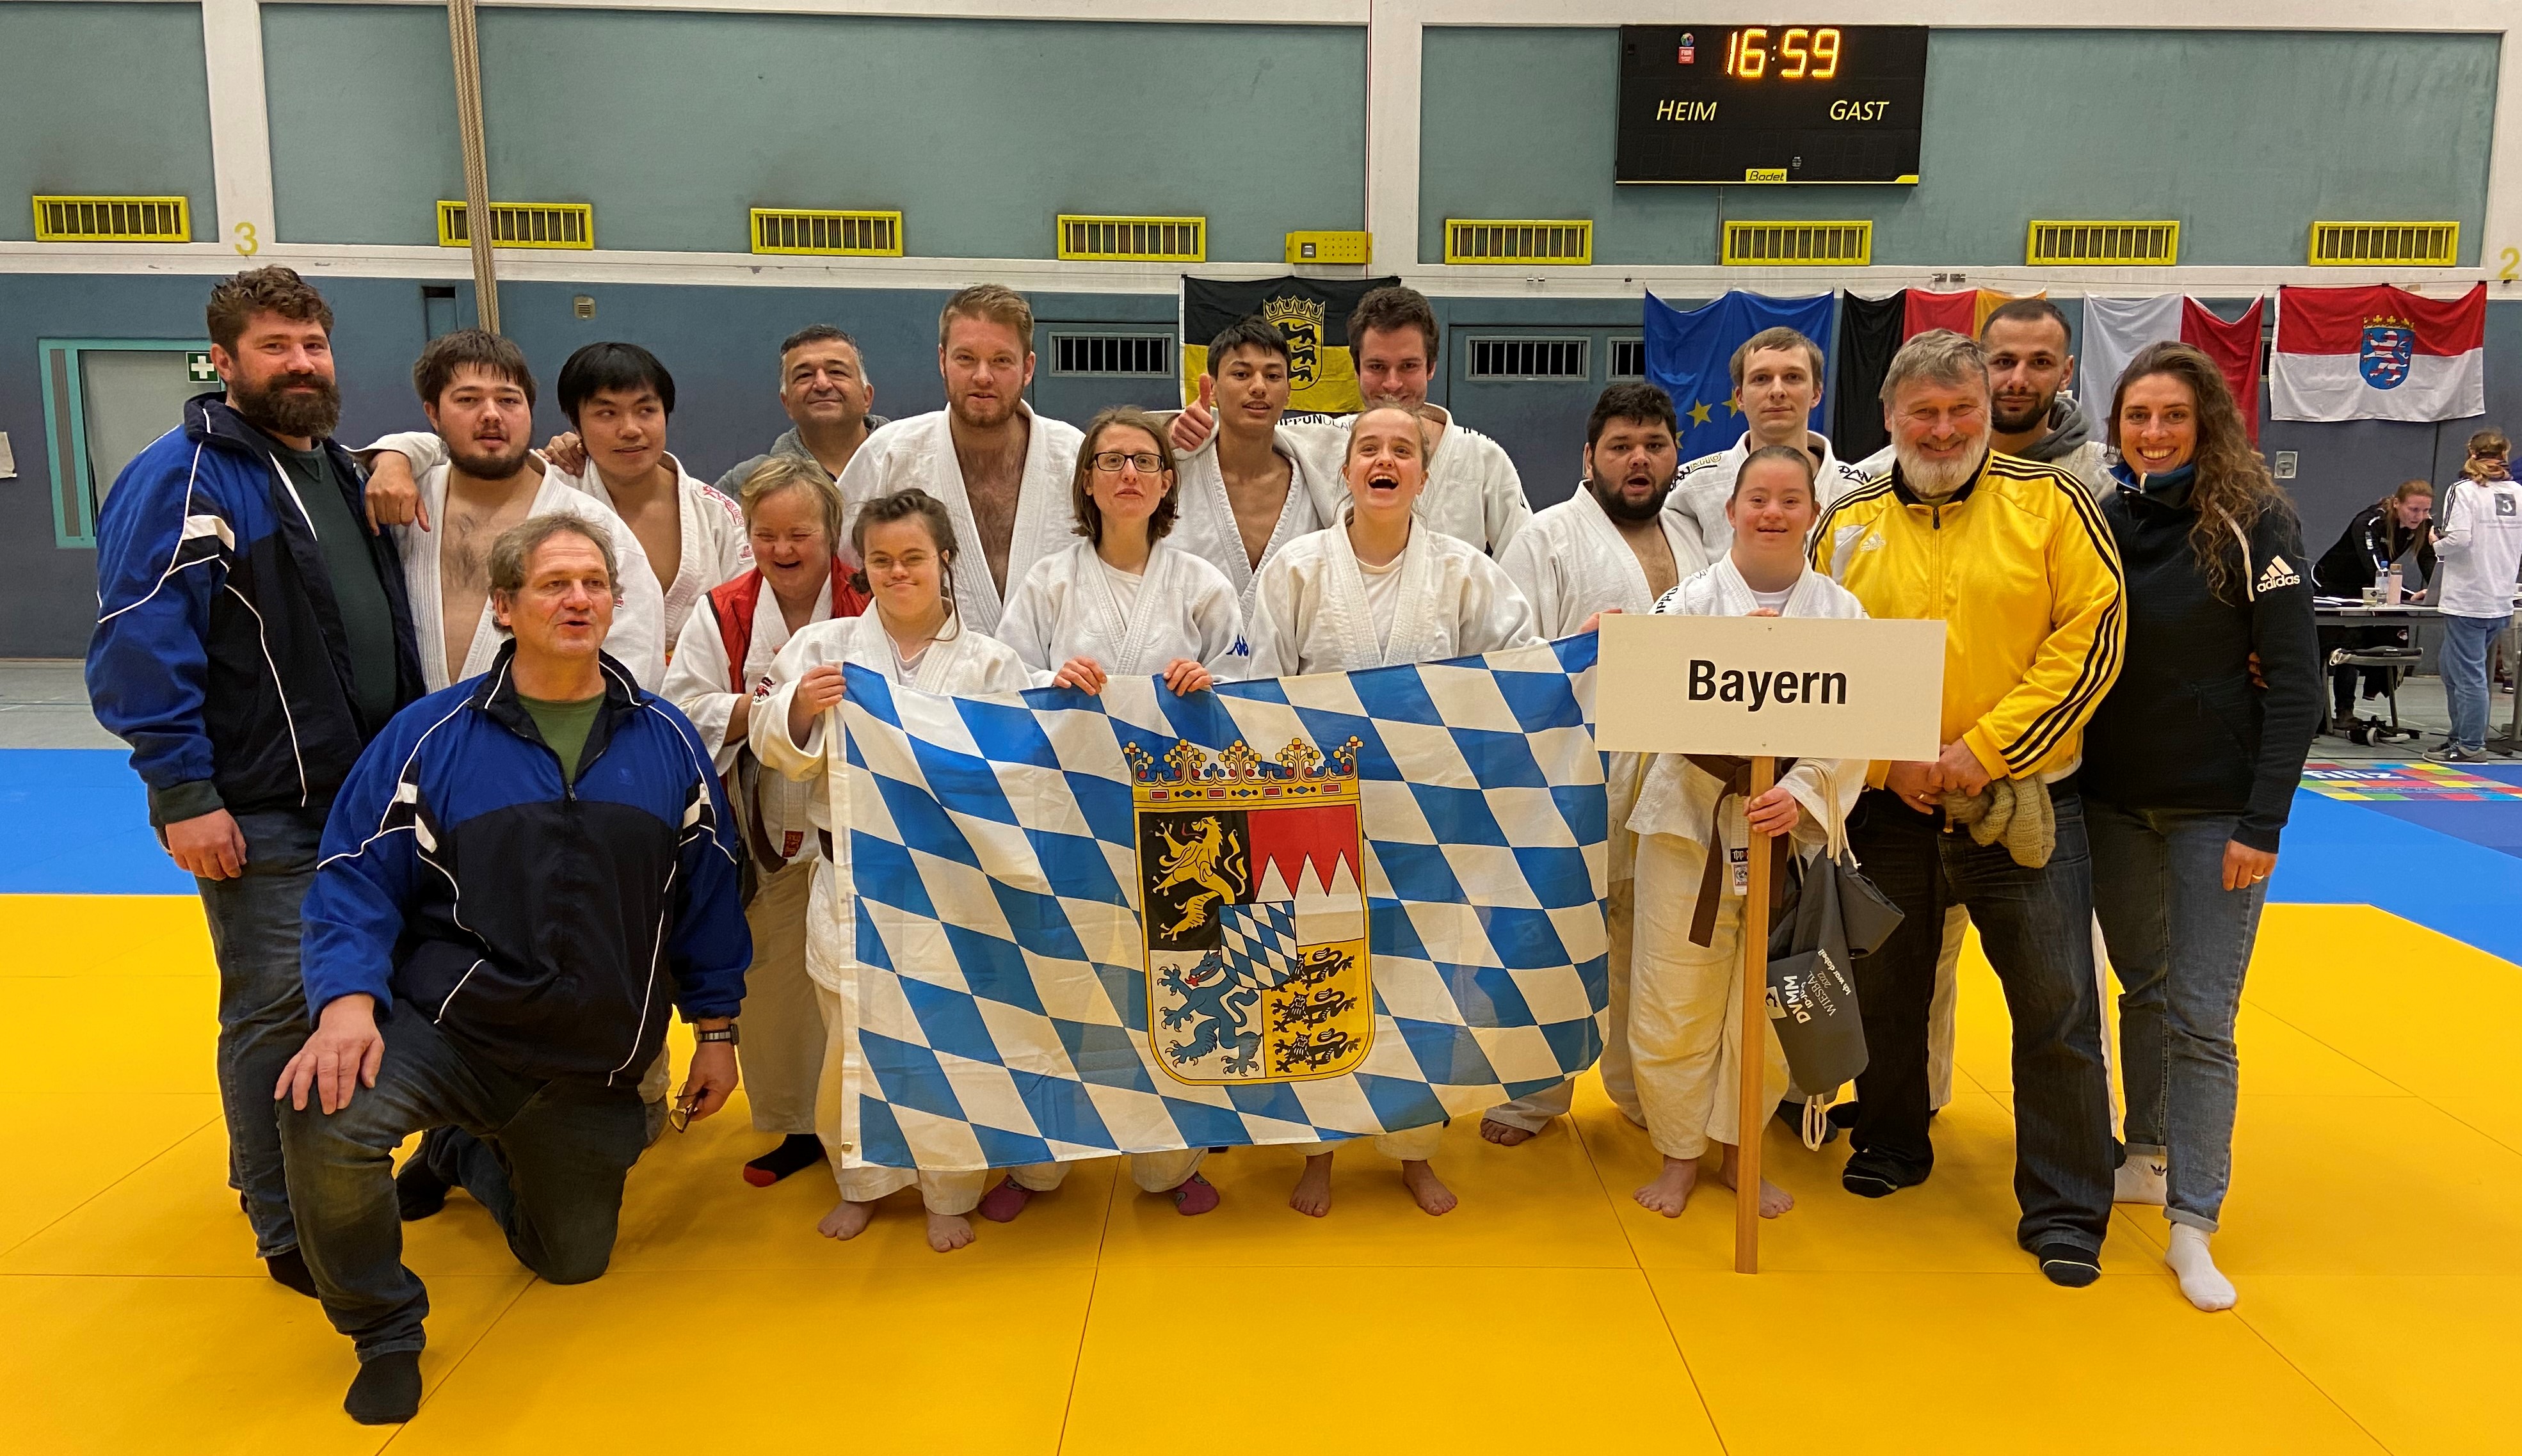 Unsere Judoka posieren in der Sporthalle für ein Gruppenbild und halten eine bayerische Flagge.